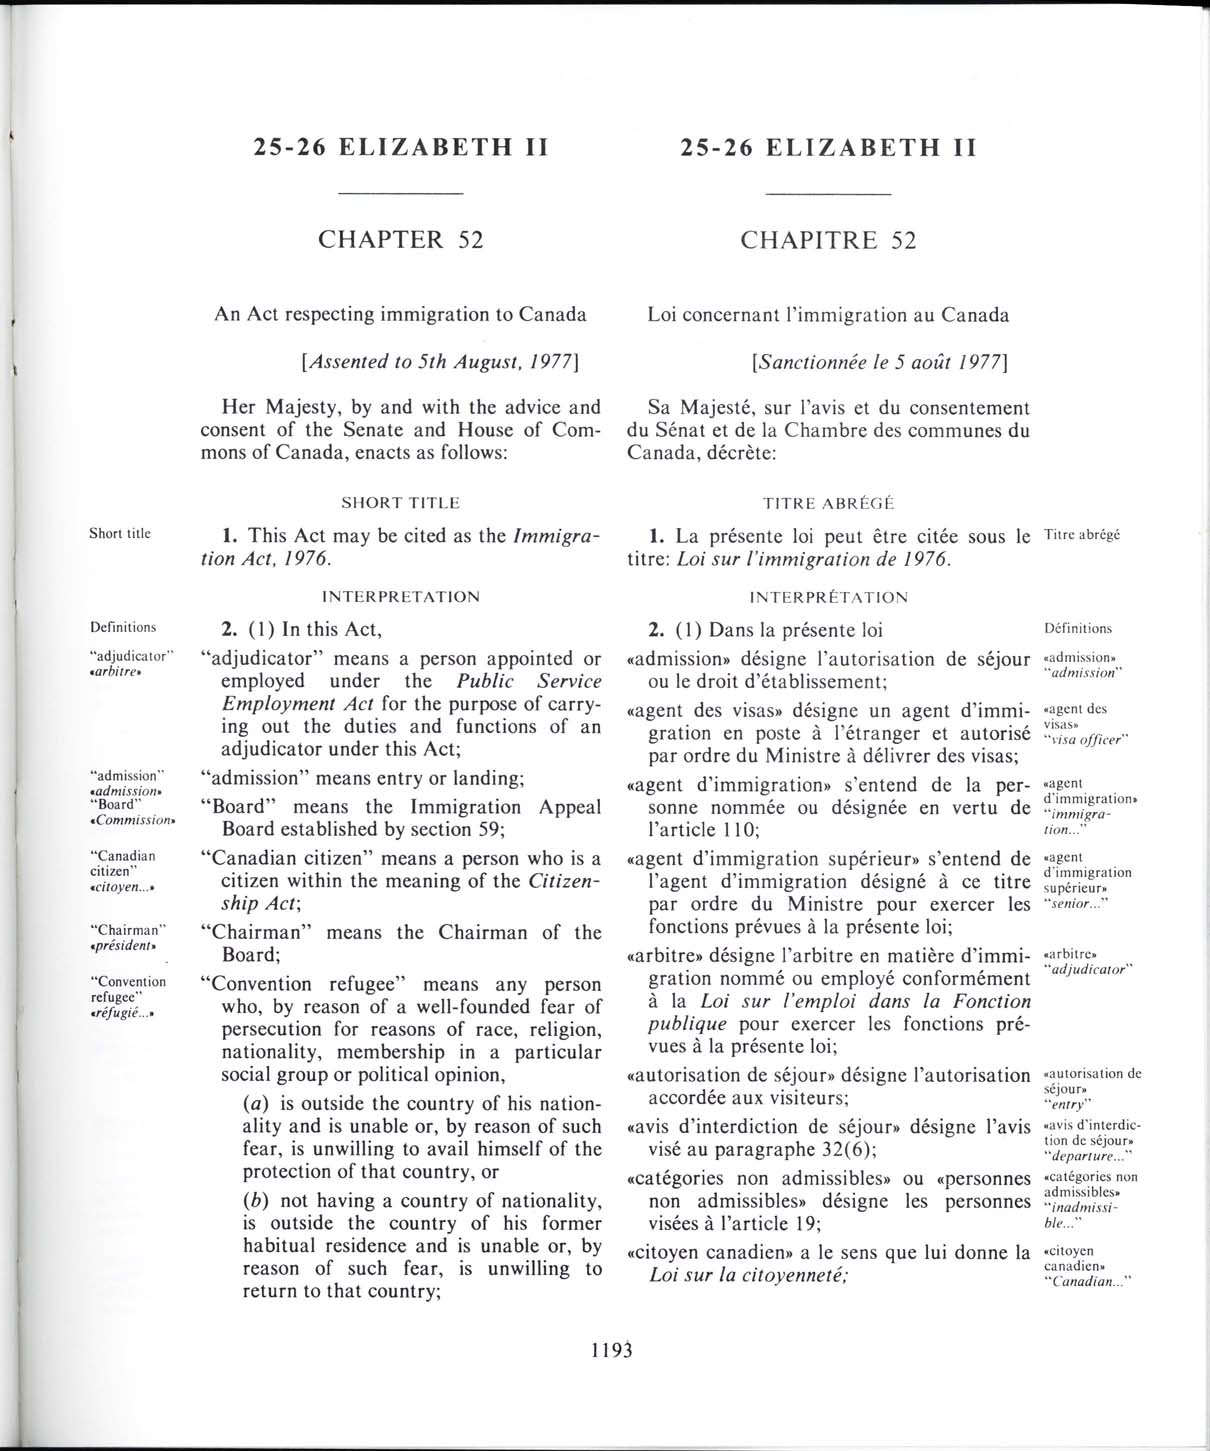 Chapitre 52 Page 1193 Loi sur l’immigration de 1976